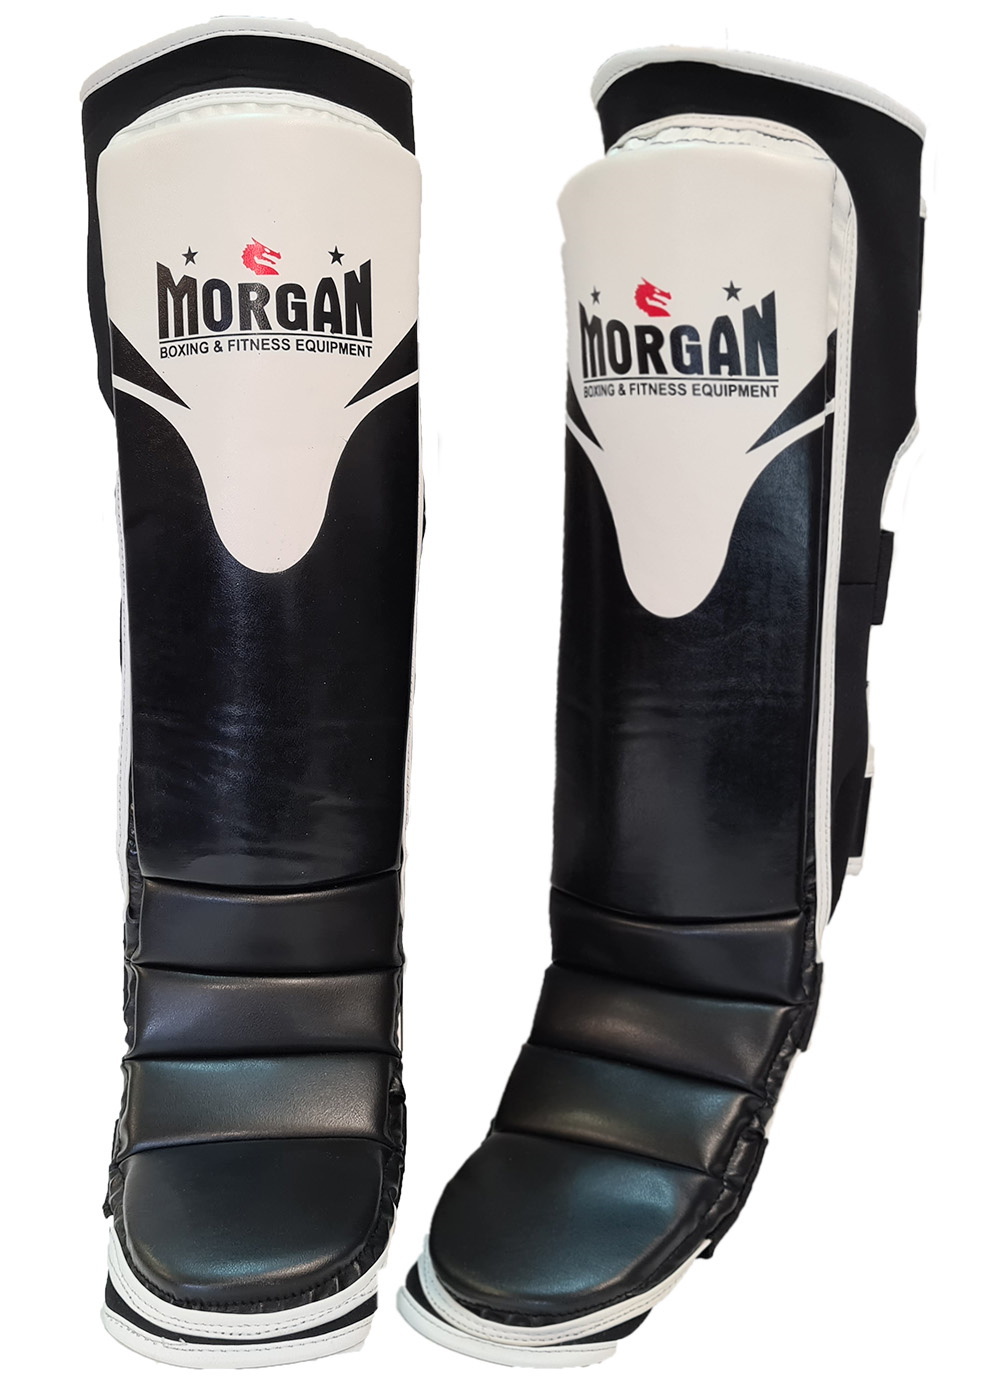 MORGAN V2 Endurance Pro Muay Thai Boxing Shin Guard And Instep Protectors 